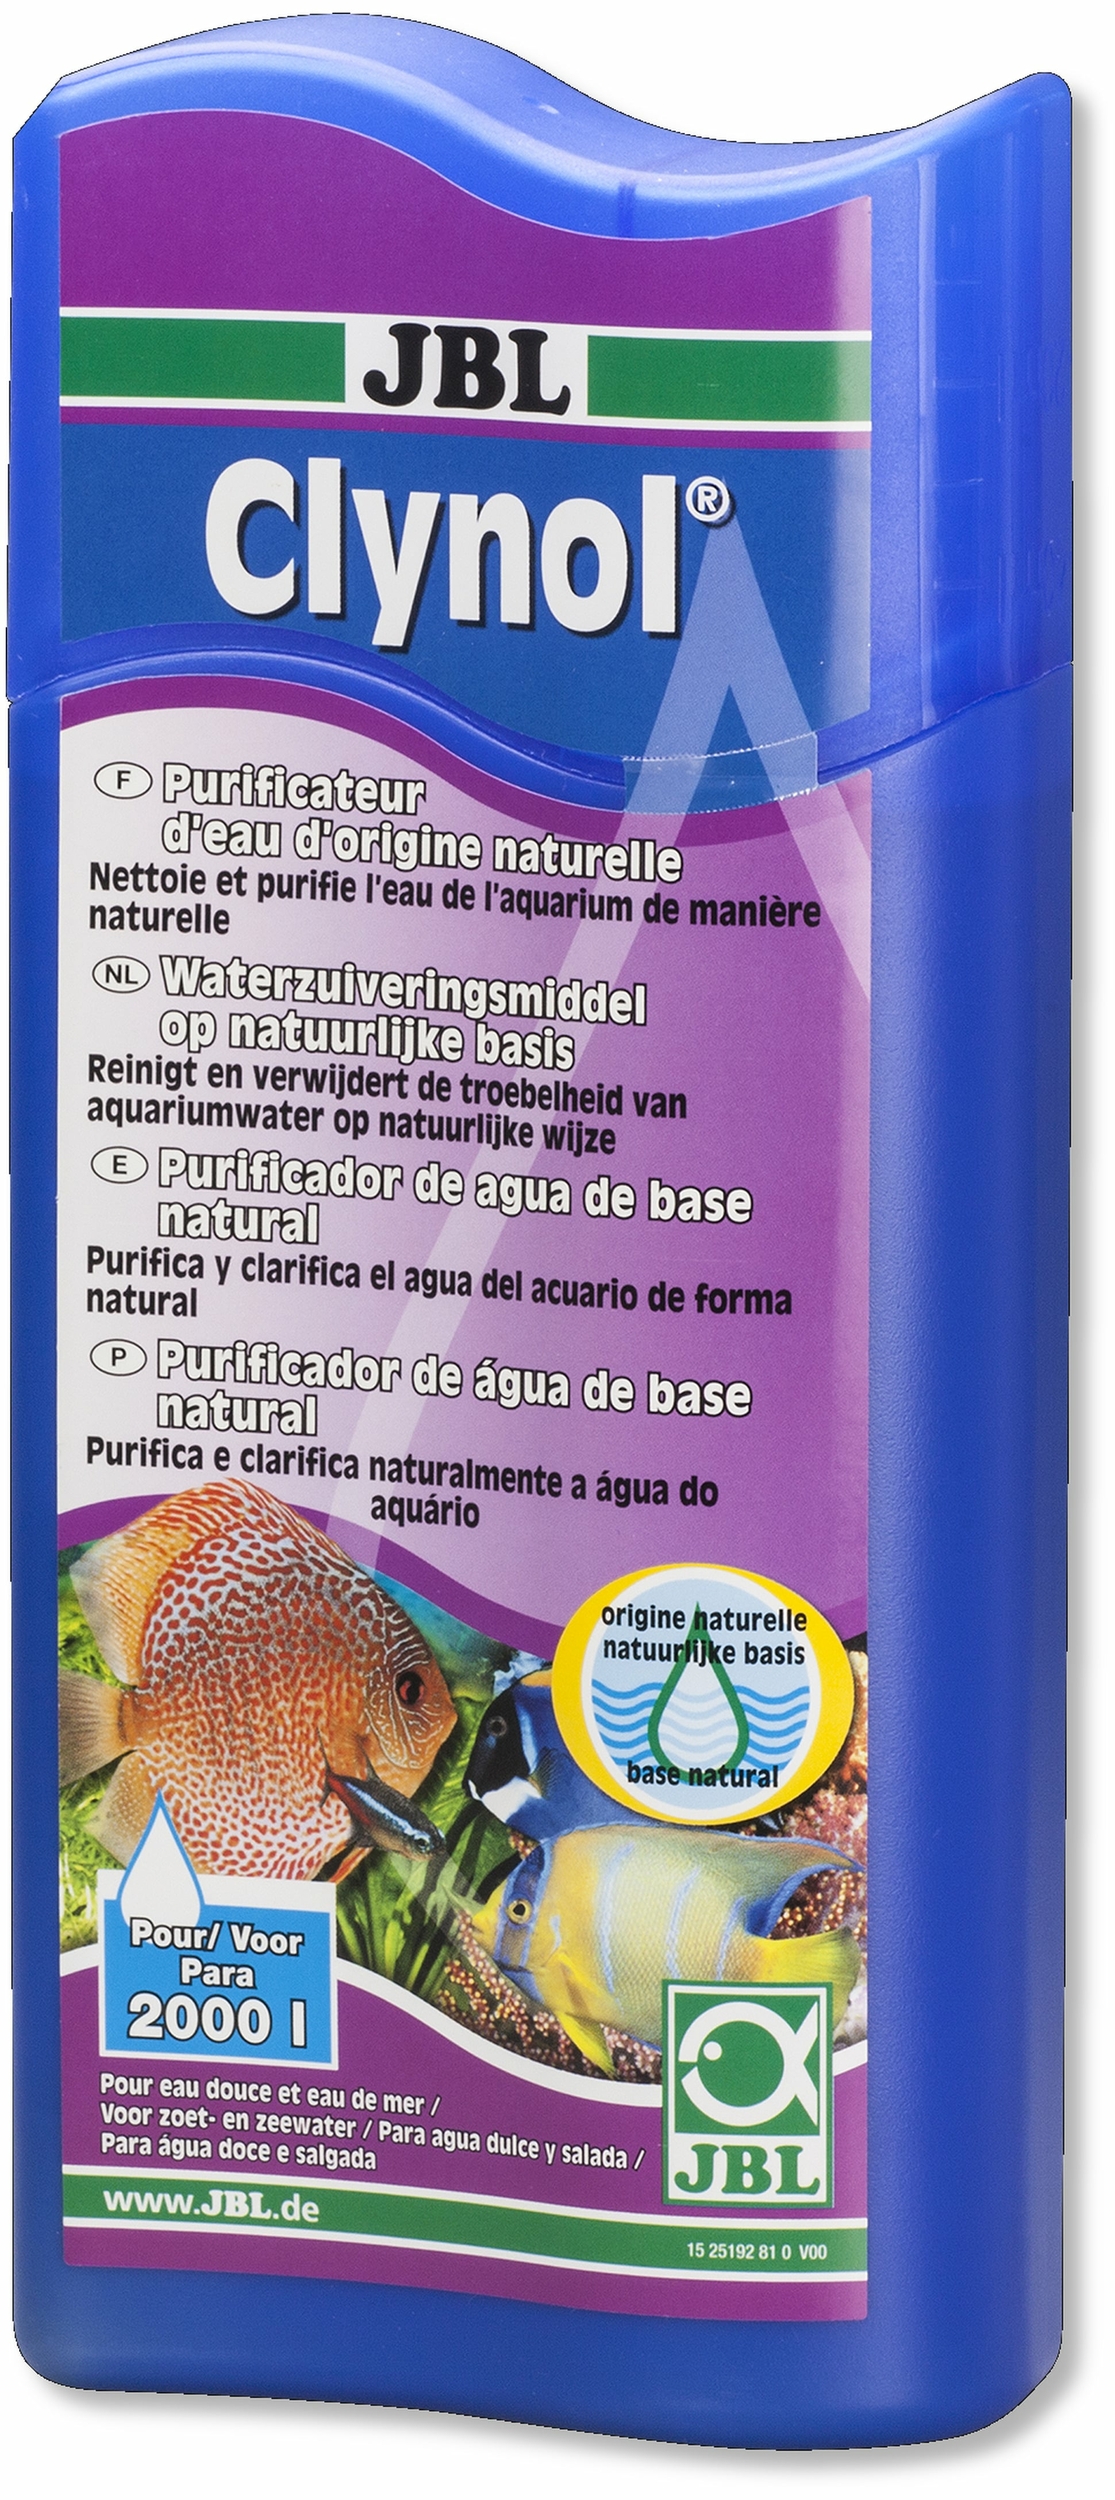 jbl-clynol-500-ml-purificateur-d-eau-d-origine-naturelle-pour-aquarium-d-eau-douce-min